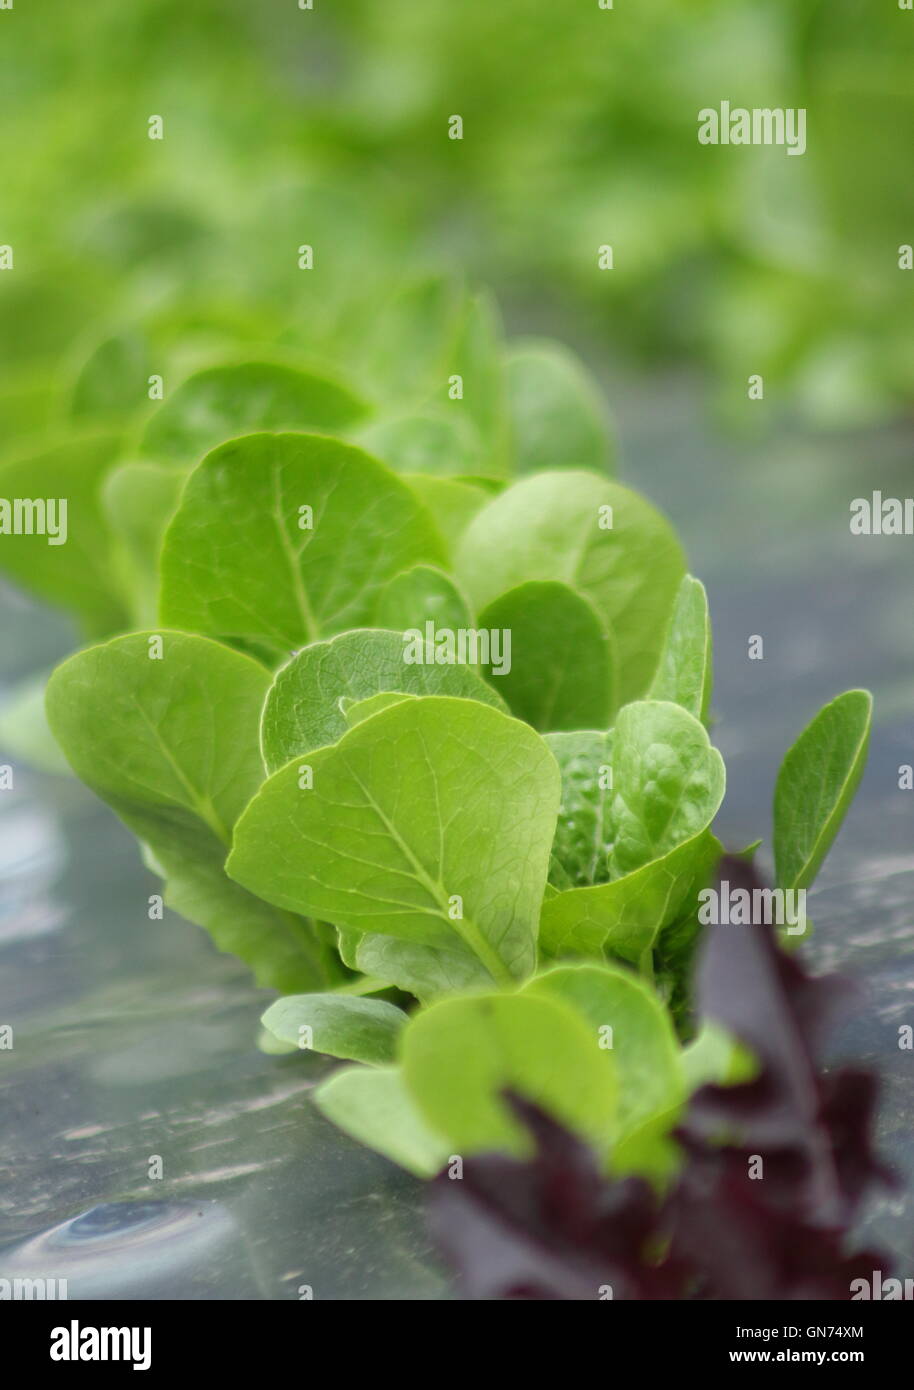 Salatblätter angebaut mit einer organischen Gartenarbeit Technik mit schwarzen Mulch Folie in einem englischen Garten einstellen - Sommer Stockfoto